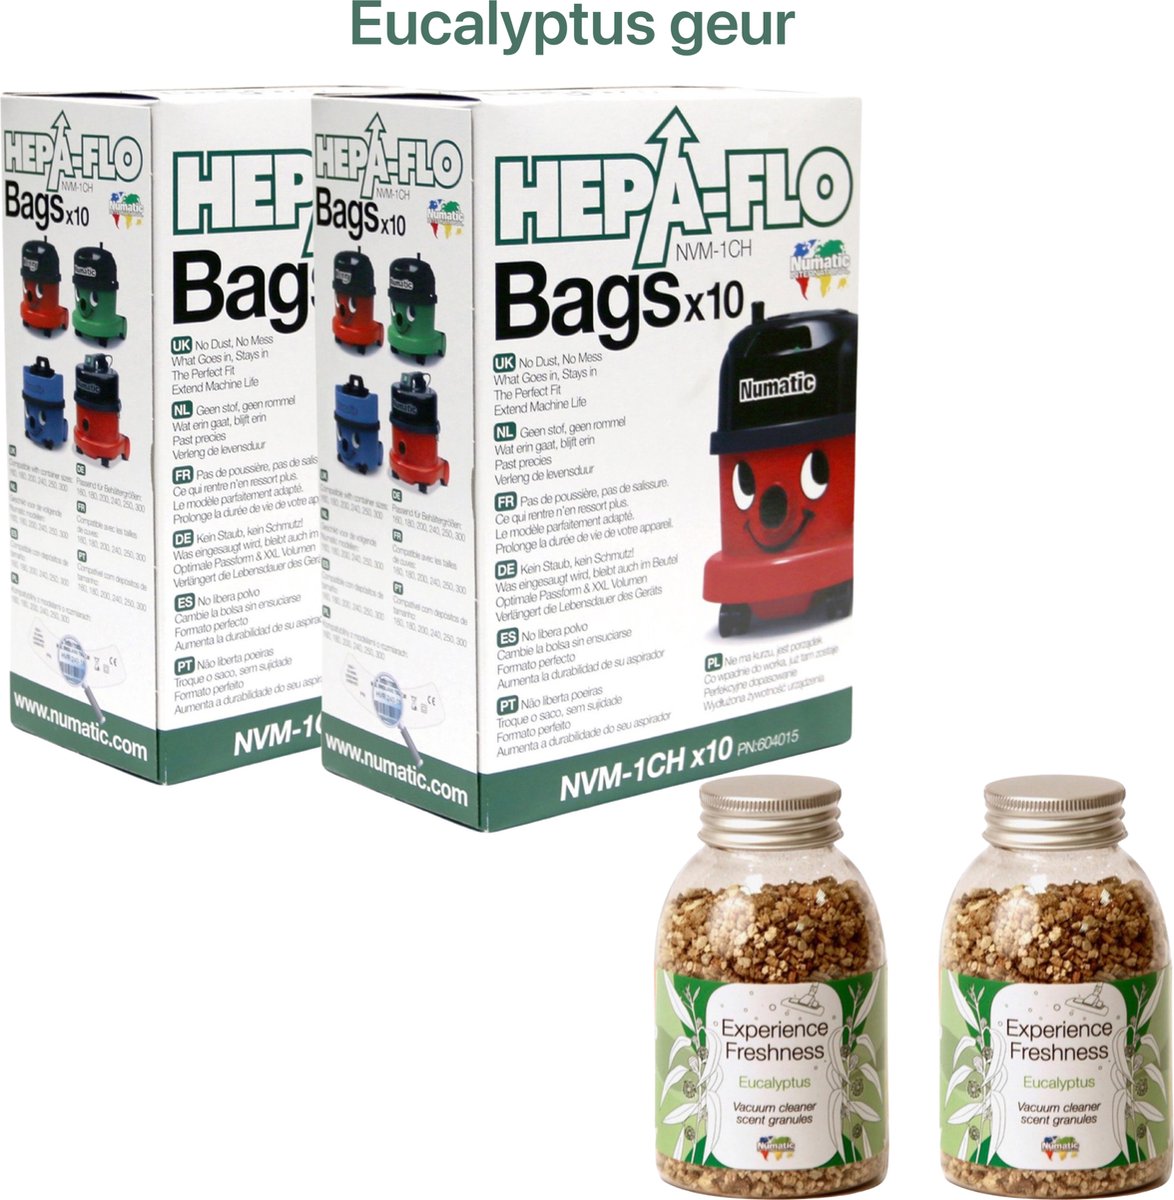 Numatic - 2x Stofzuigerzakken + 2x Geurkorrels (eucalyptus geur) - Hepa flo bags - Voor Henry/Hetty - NVM 1CH X10 - COMBIDEAL